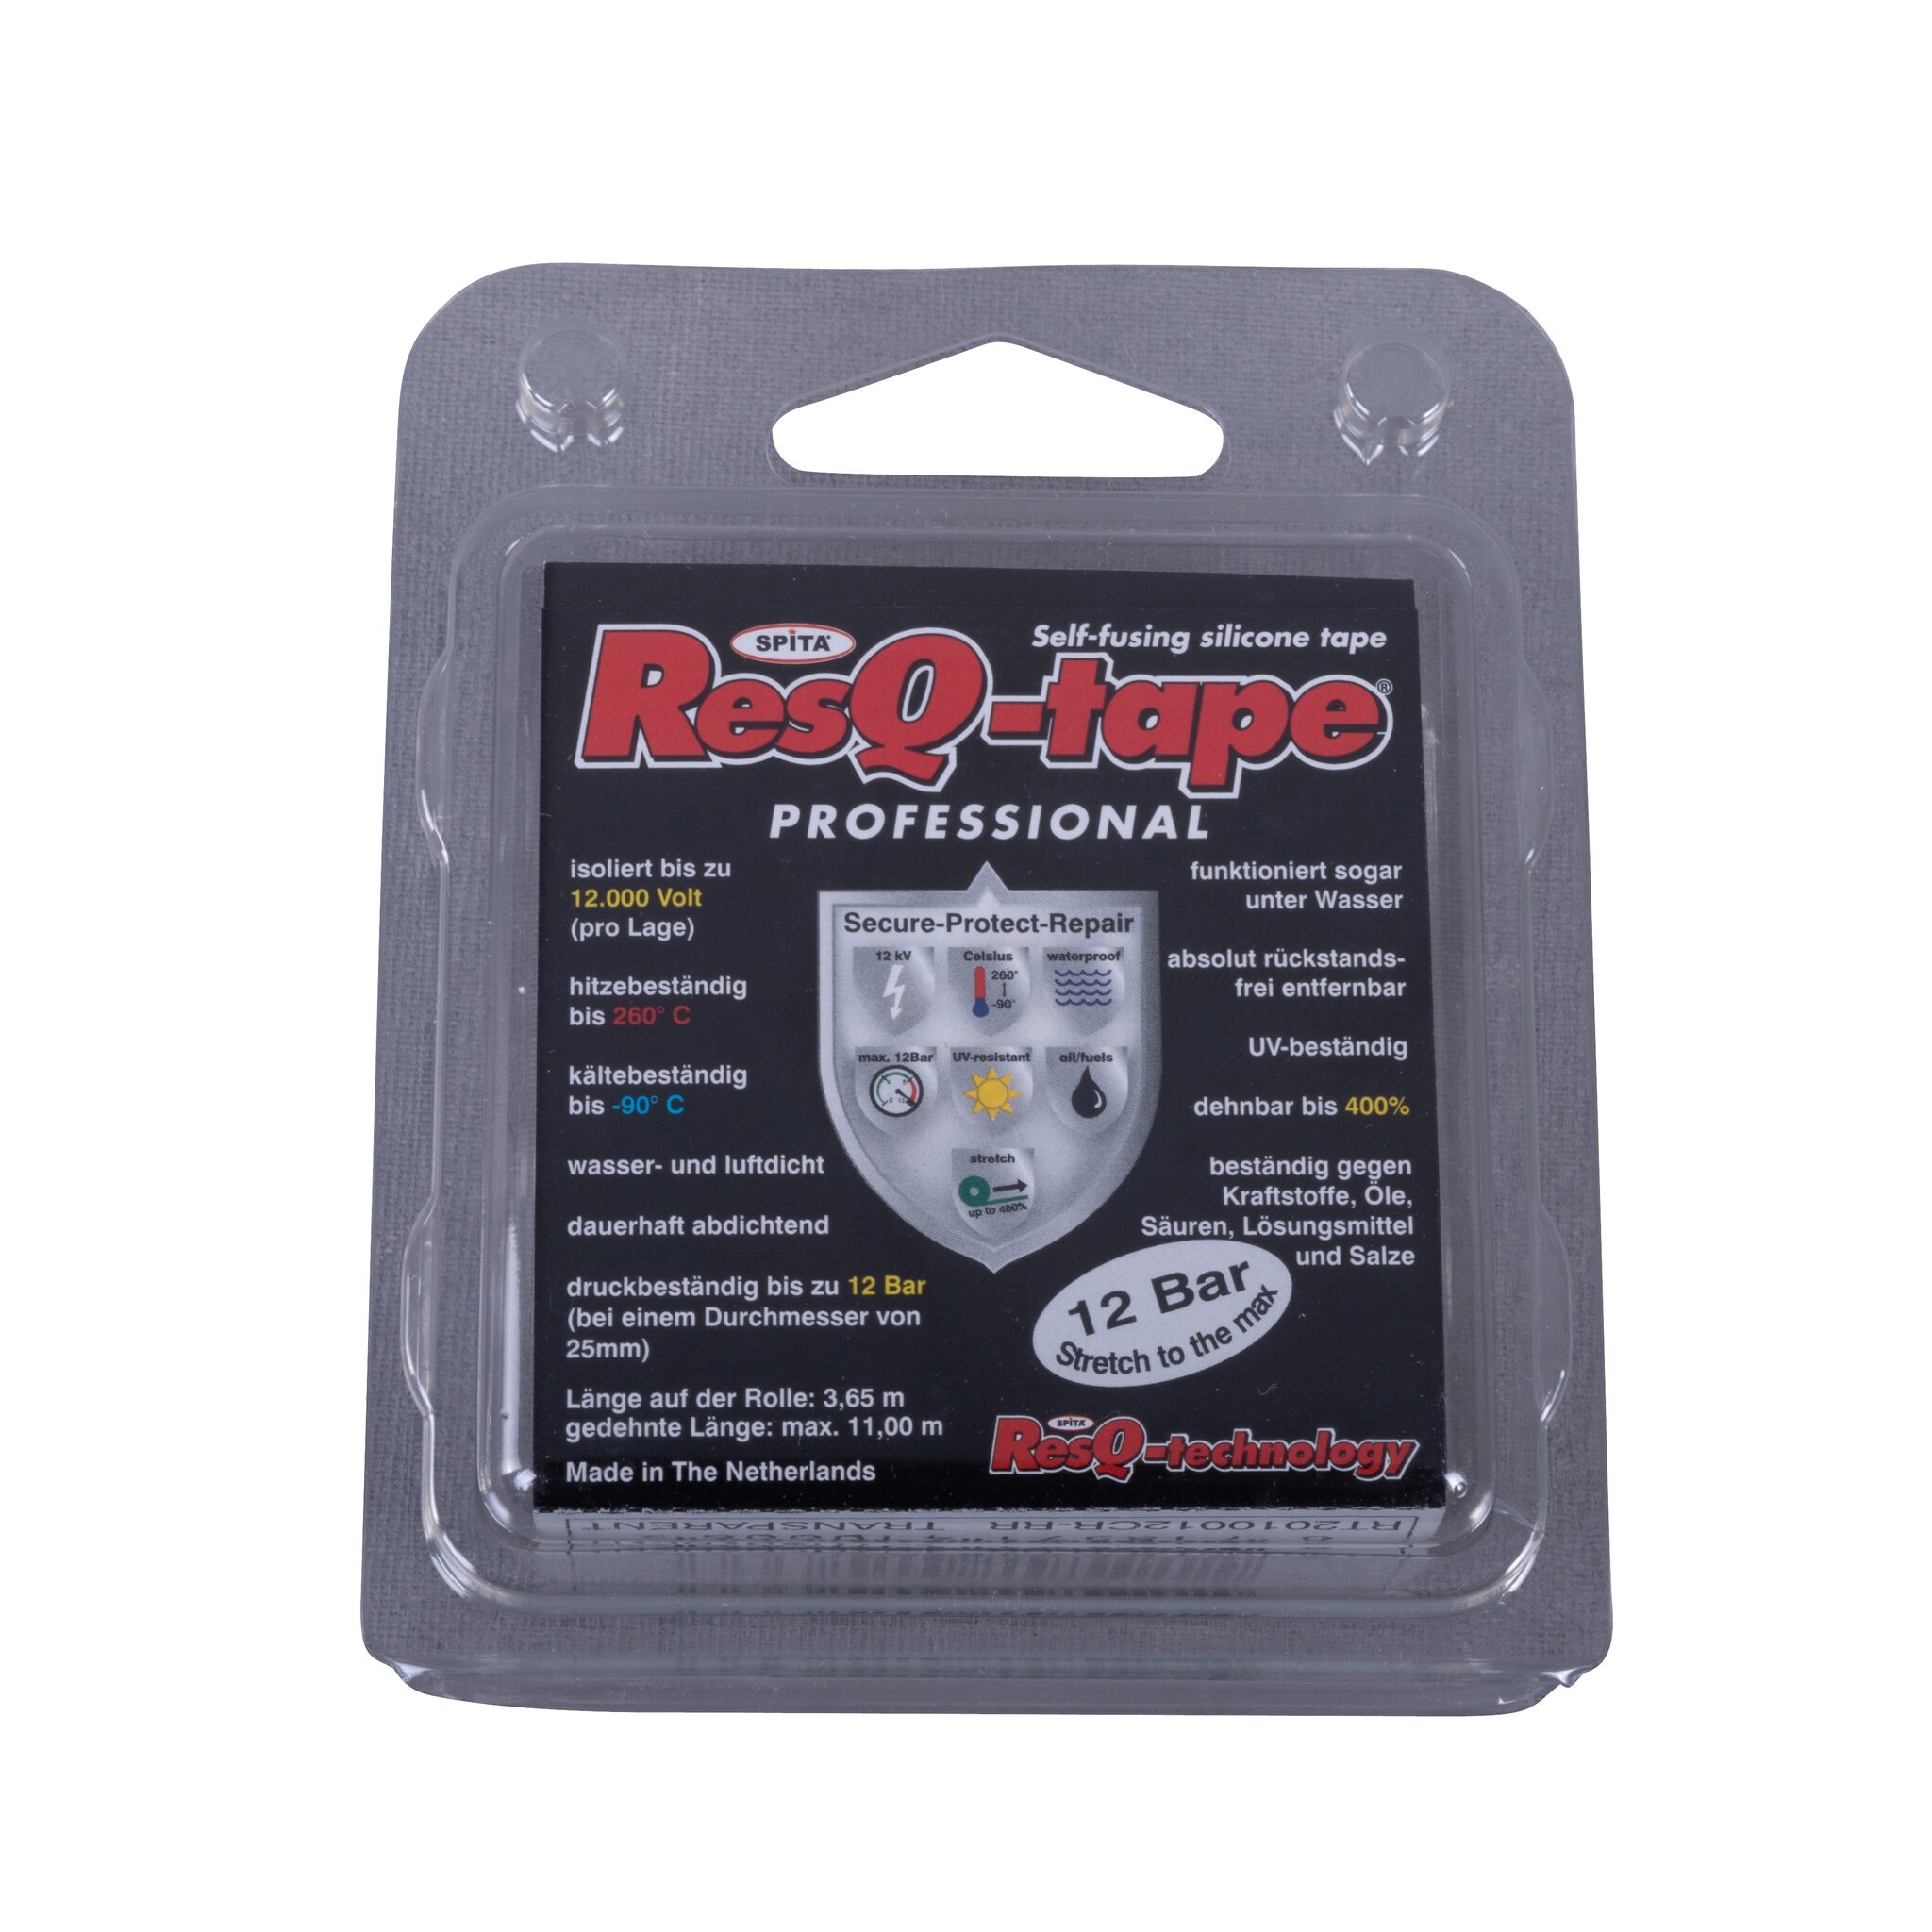 ResQ-tape repair tape